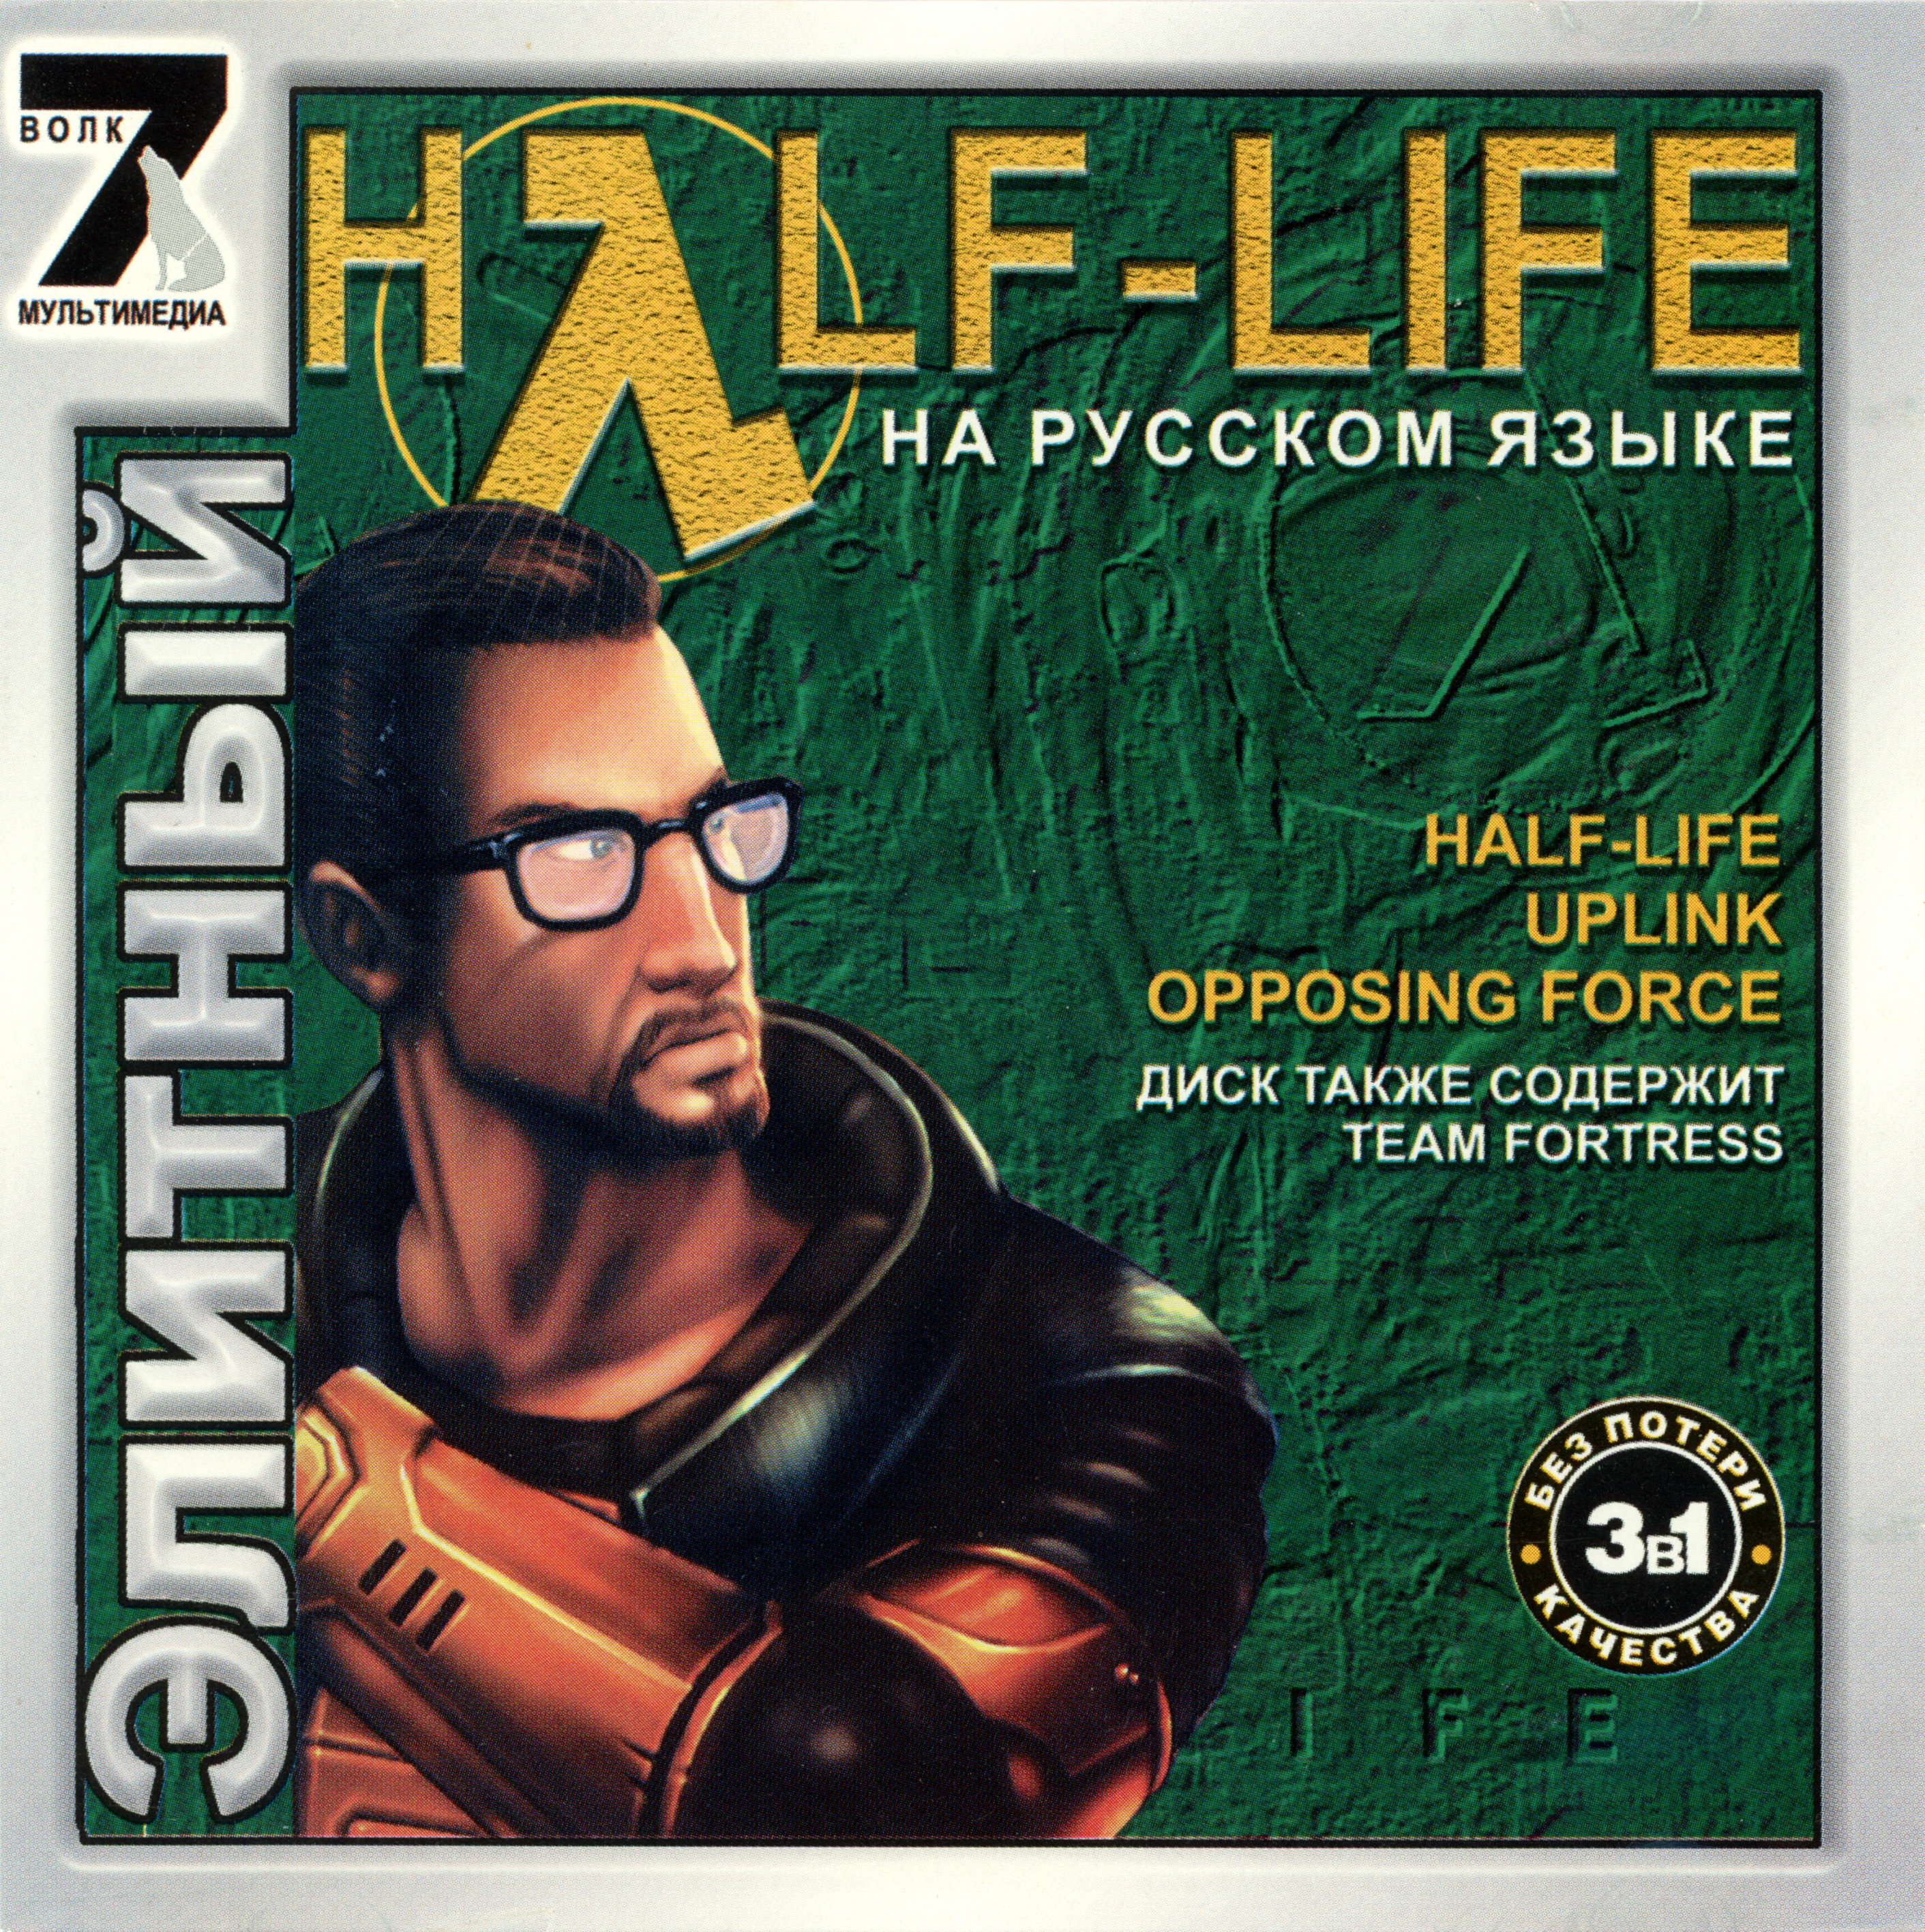 Сборник старых игр. Half Life 1 обложка 1998 диск. Half Life 2 антология диск. Диск игры half-Life 1. Элитный half Life диск.